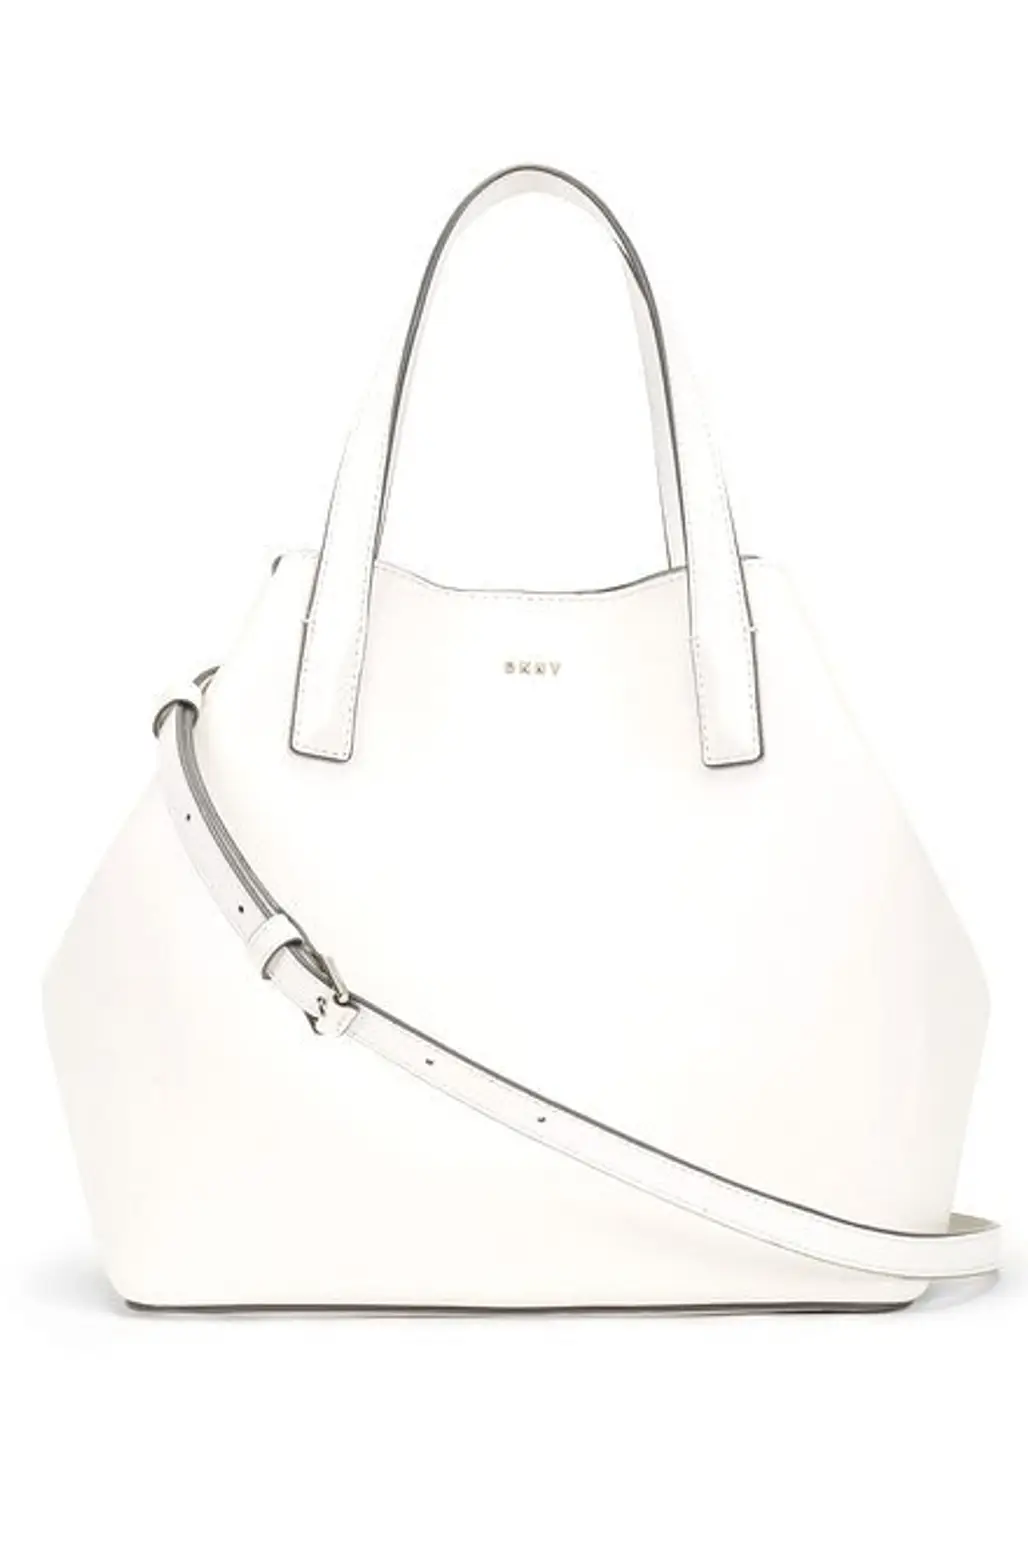 bag, handbag, shoulder bag, leather, fashion accessory,